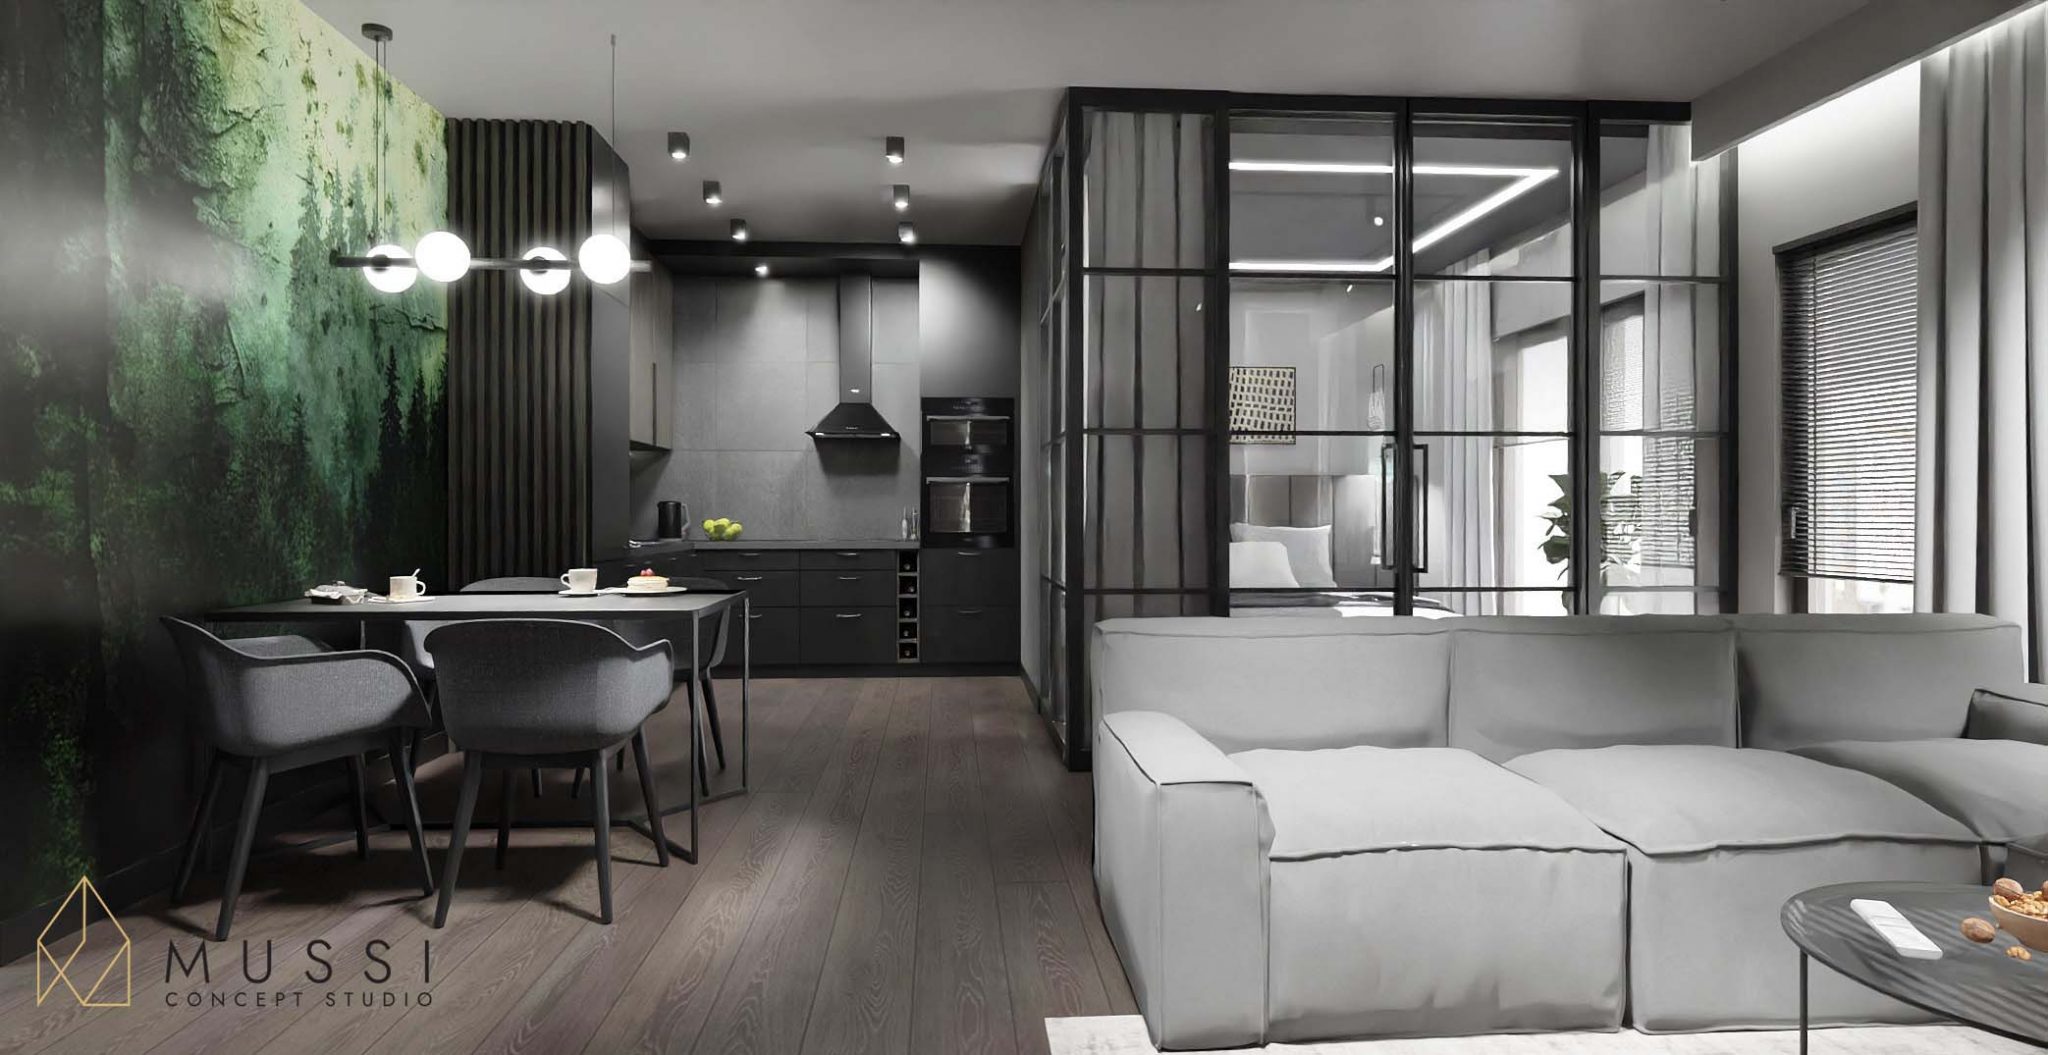 Projekt mieszkania w stylu loft | Projekty wnętrz Mussi Concept Studio